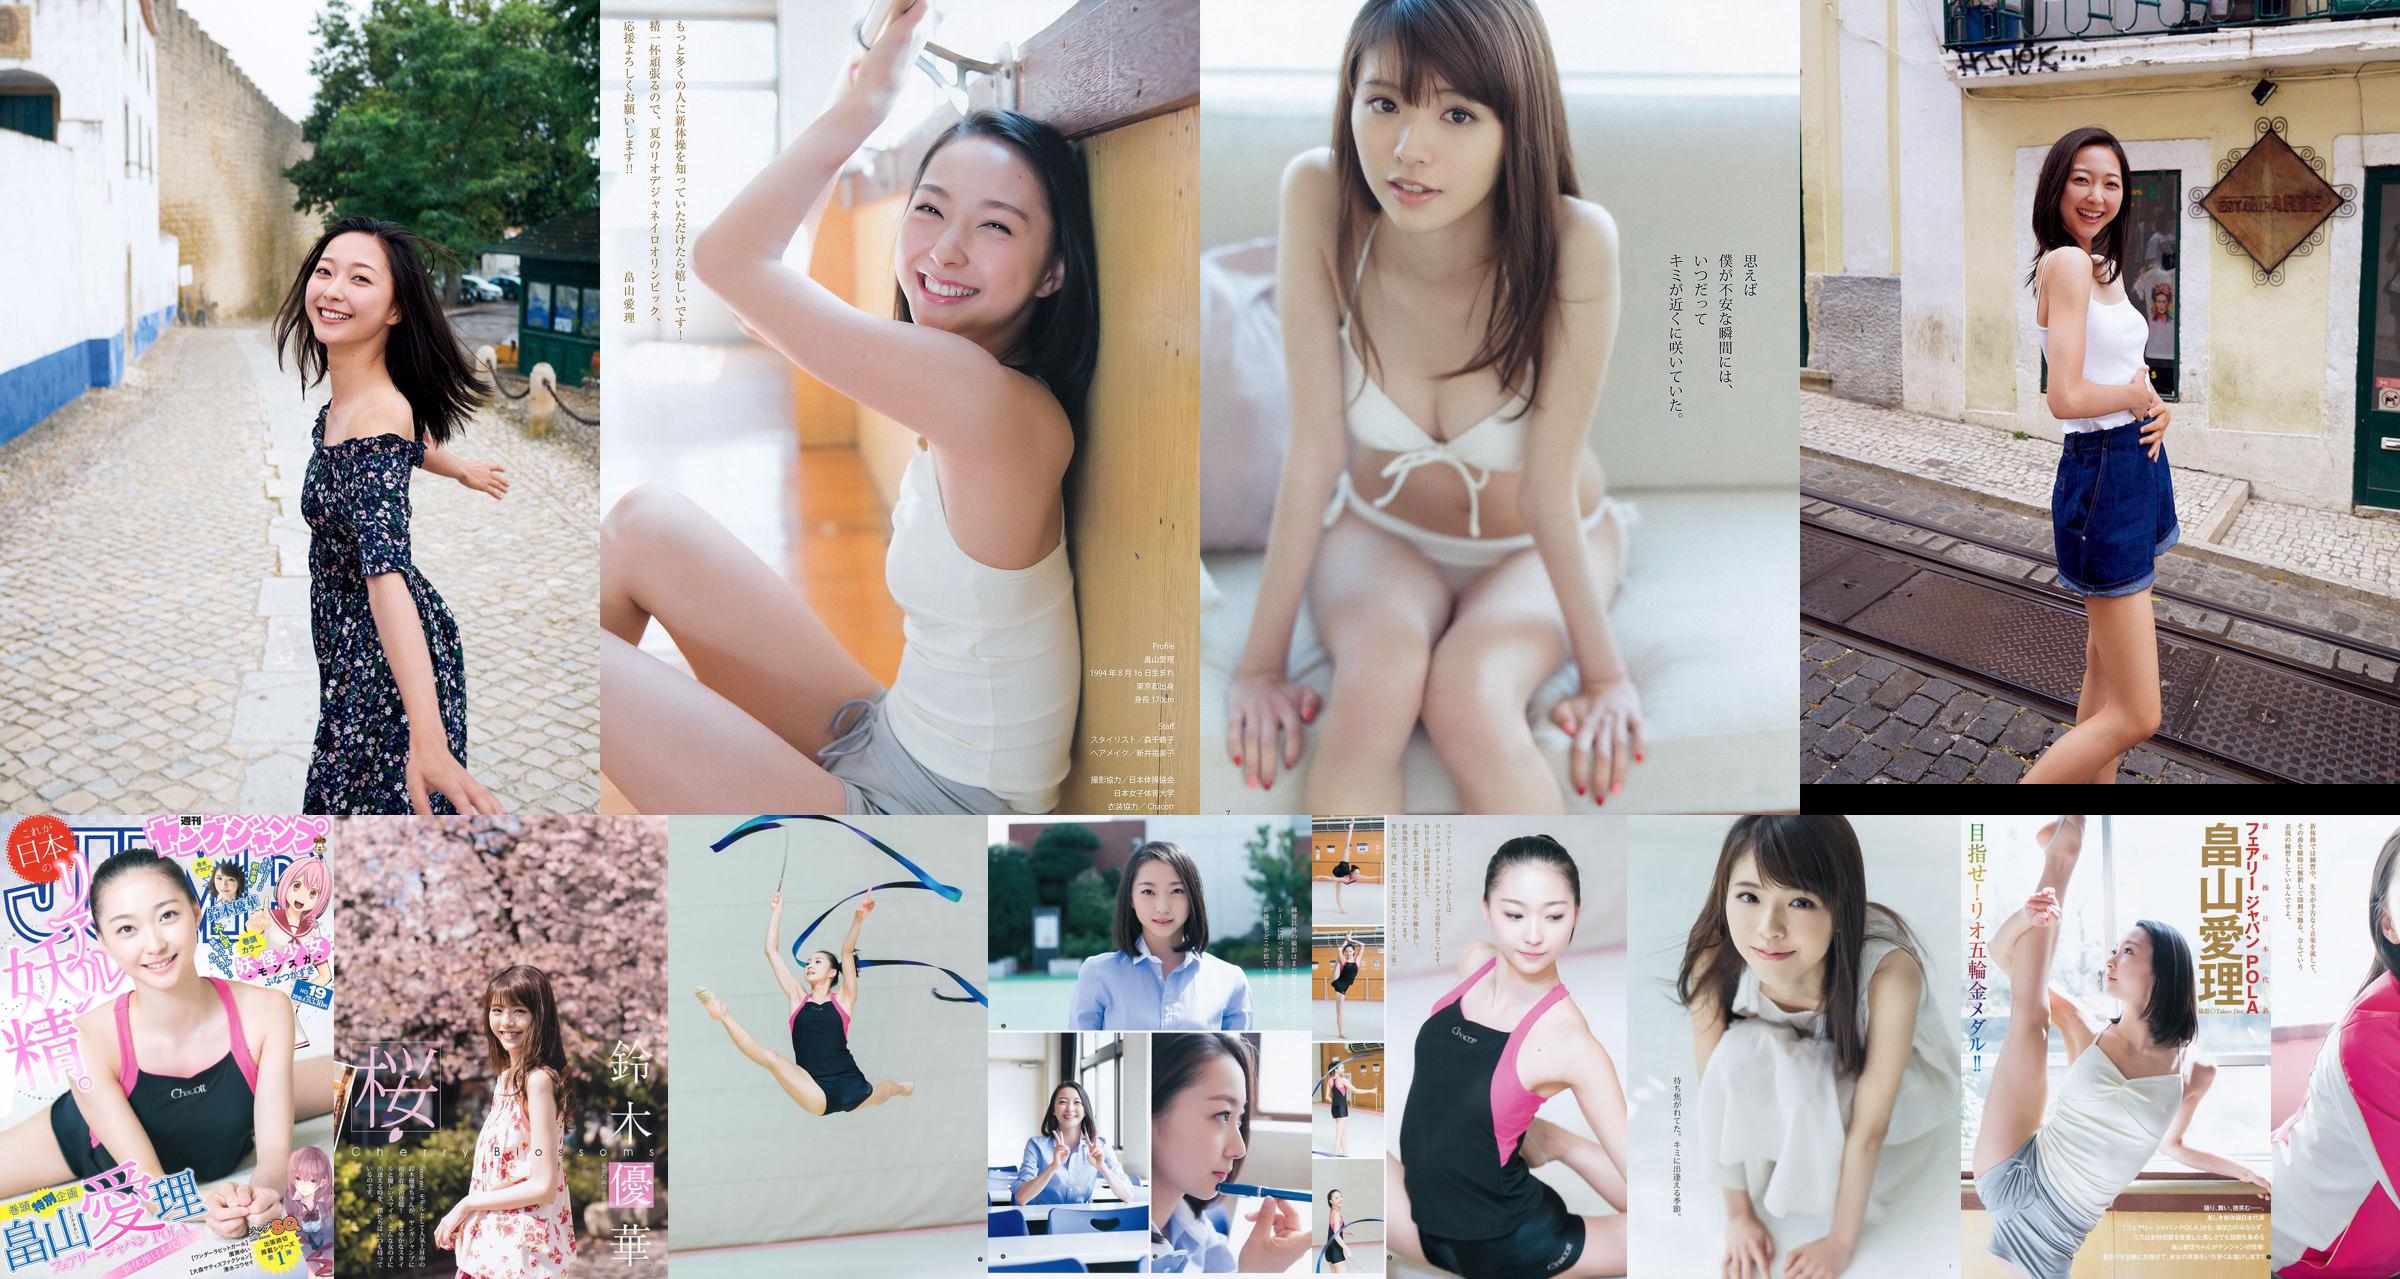 [ENTAME] Mai Shiraishi Nanase Nishino Rena Shimada Yui Takano Numéro de mars 2014 Photographie No.0cffba Page 3